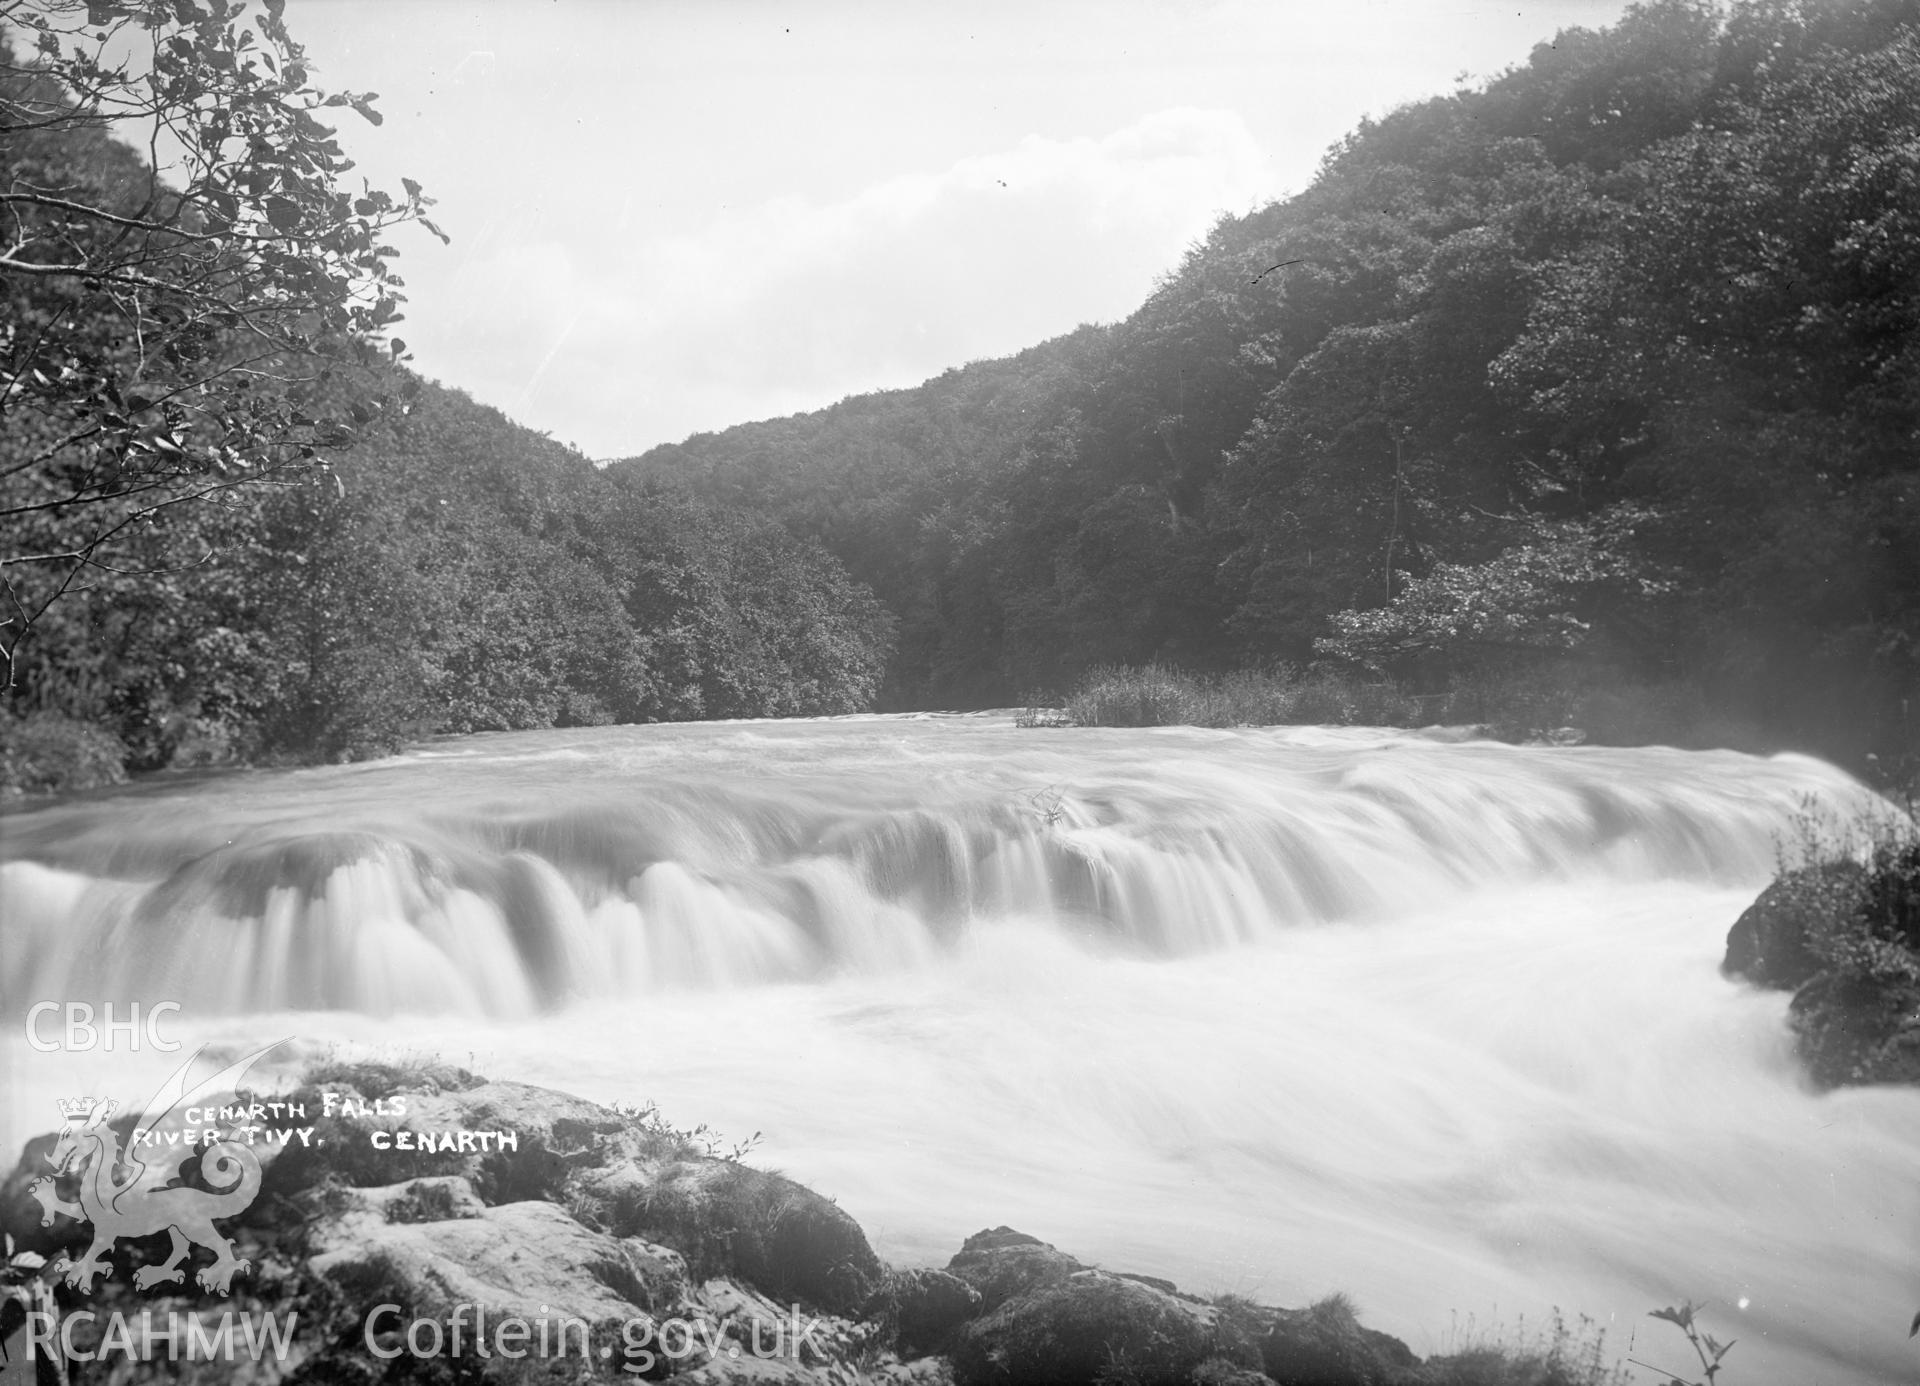 Black and white glass negative showing "Cenarth Falls, River Tyvi, Cenarth".